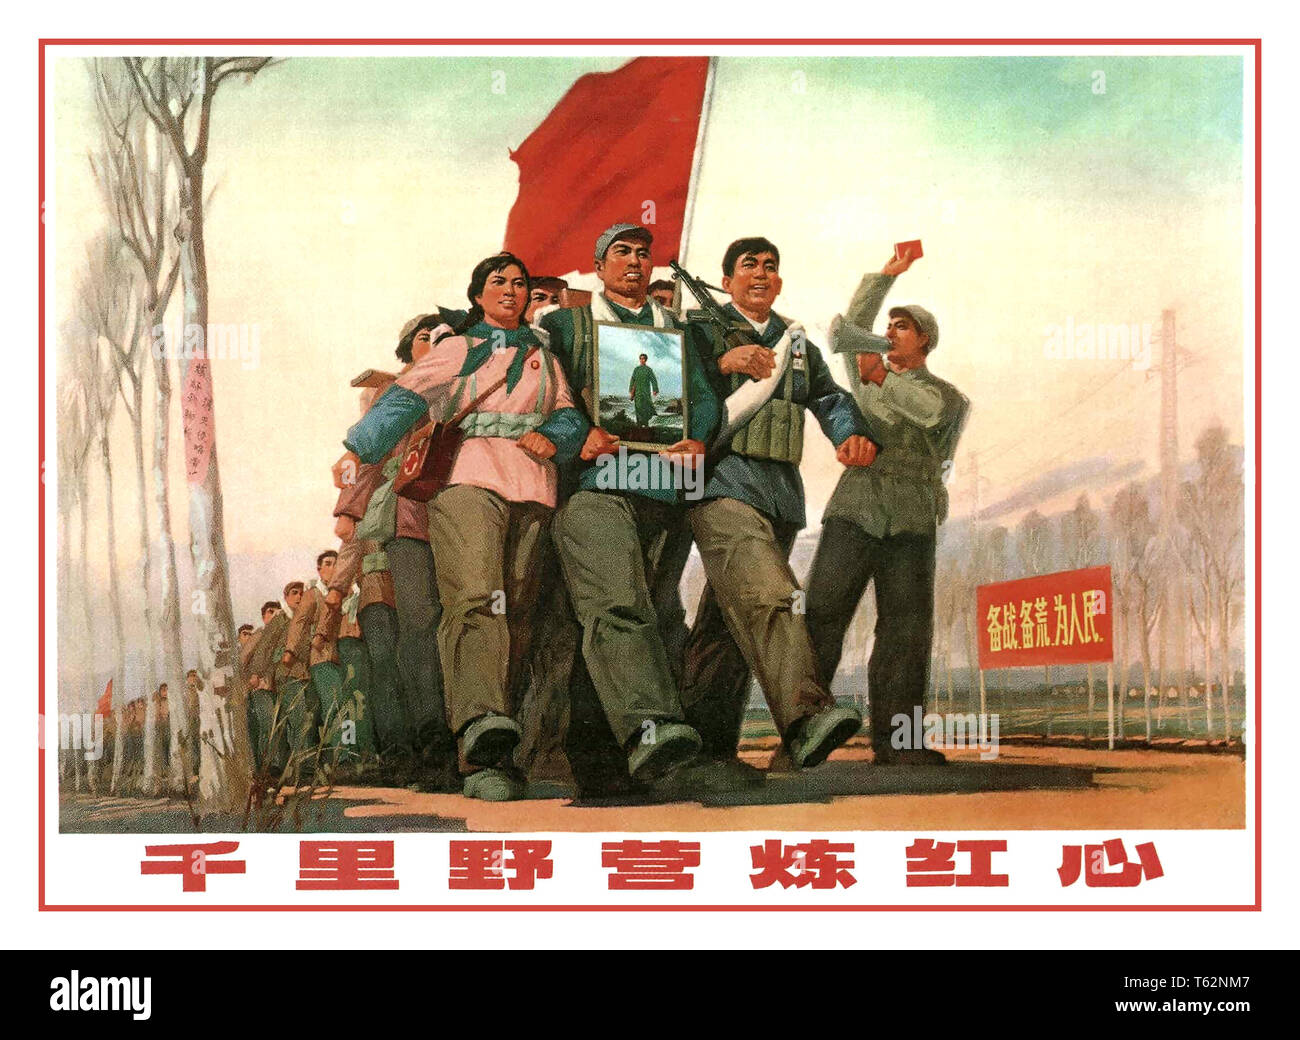 Jahrgang 1970 die chinesische Propaganda Poster: auf Tausend 'Li' vintage Chinesische Propaganda Poster 1971 zu gehen" auf Tausend 'Li' März betitelt zu mildern ein Rotes Herz" veröffentlicht von Shanghai Renmin Chubanshe zu gehen. Stockfoto